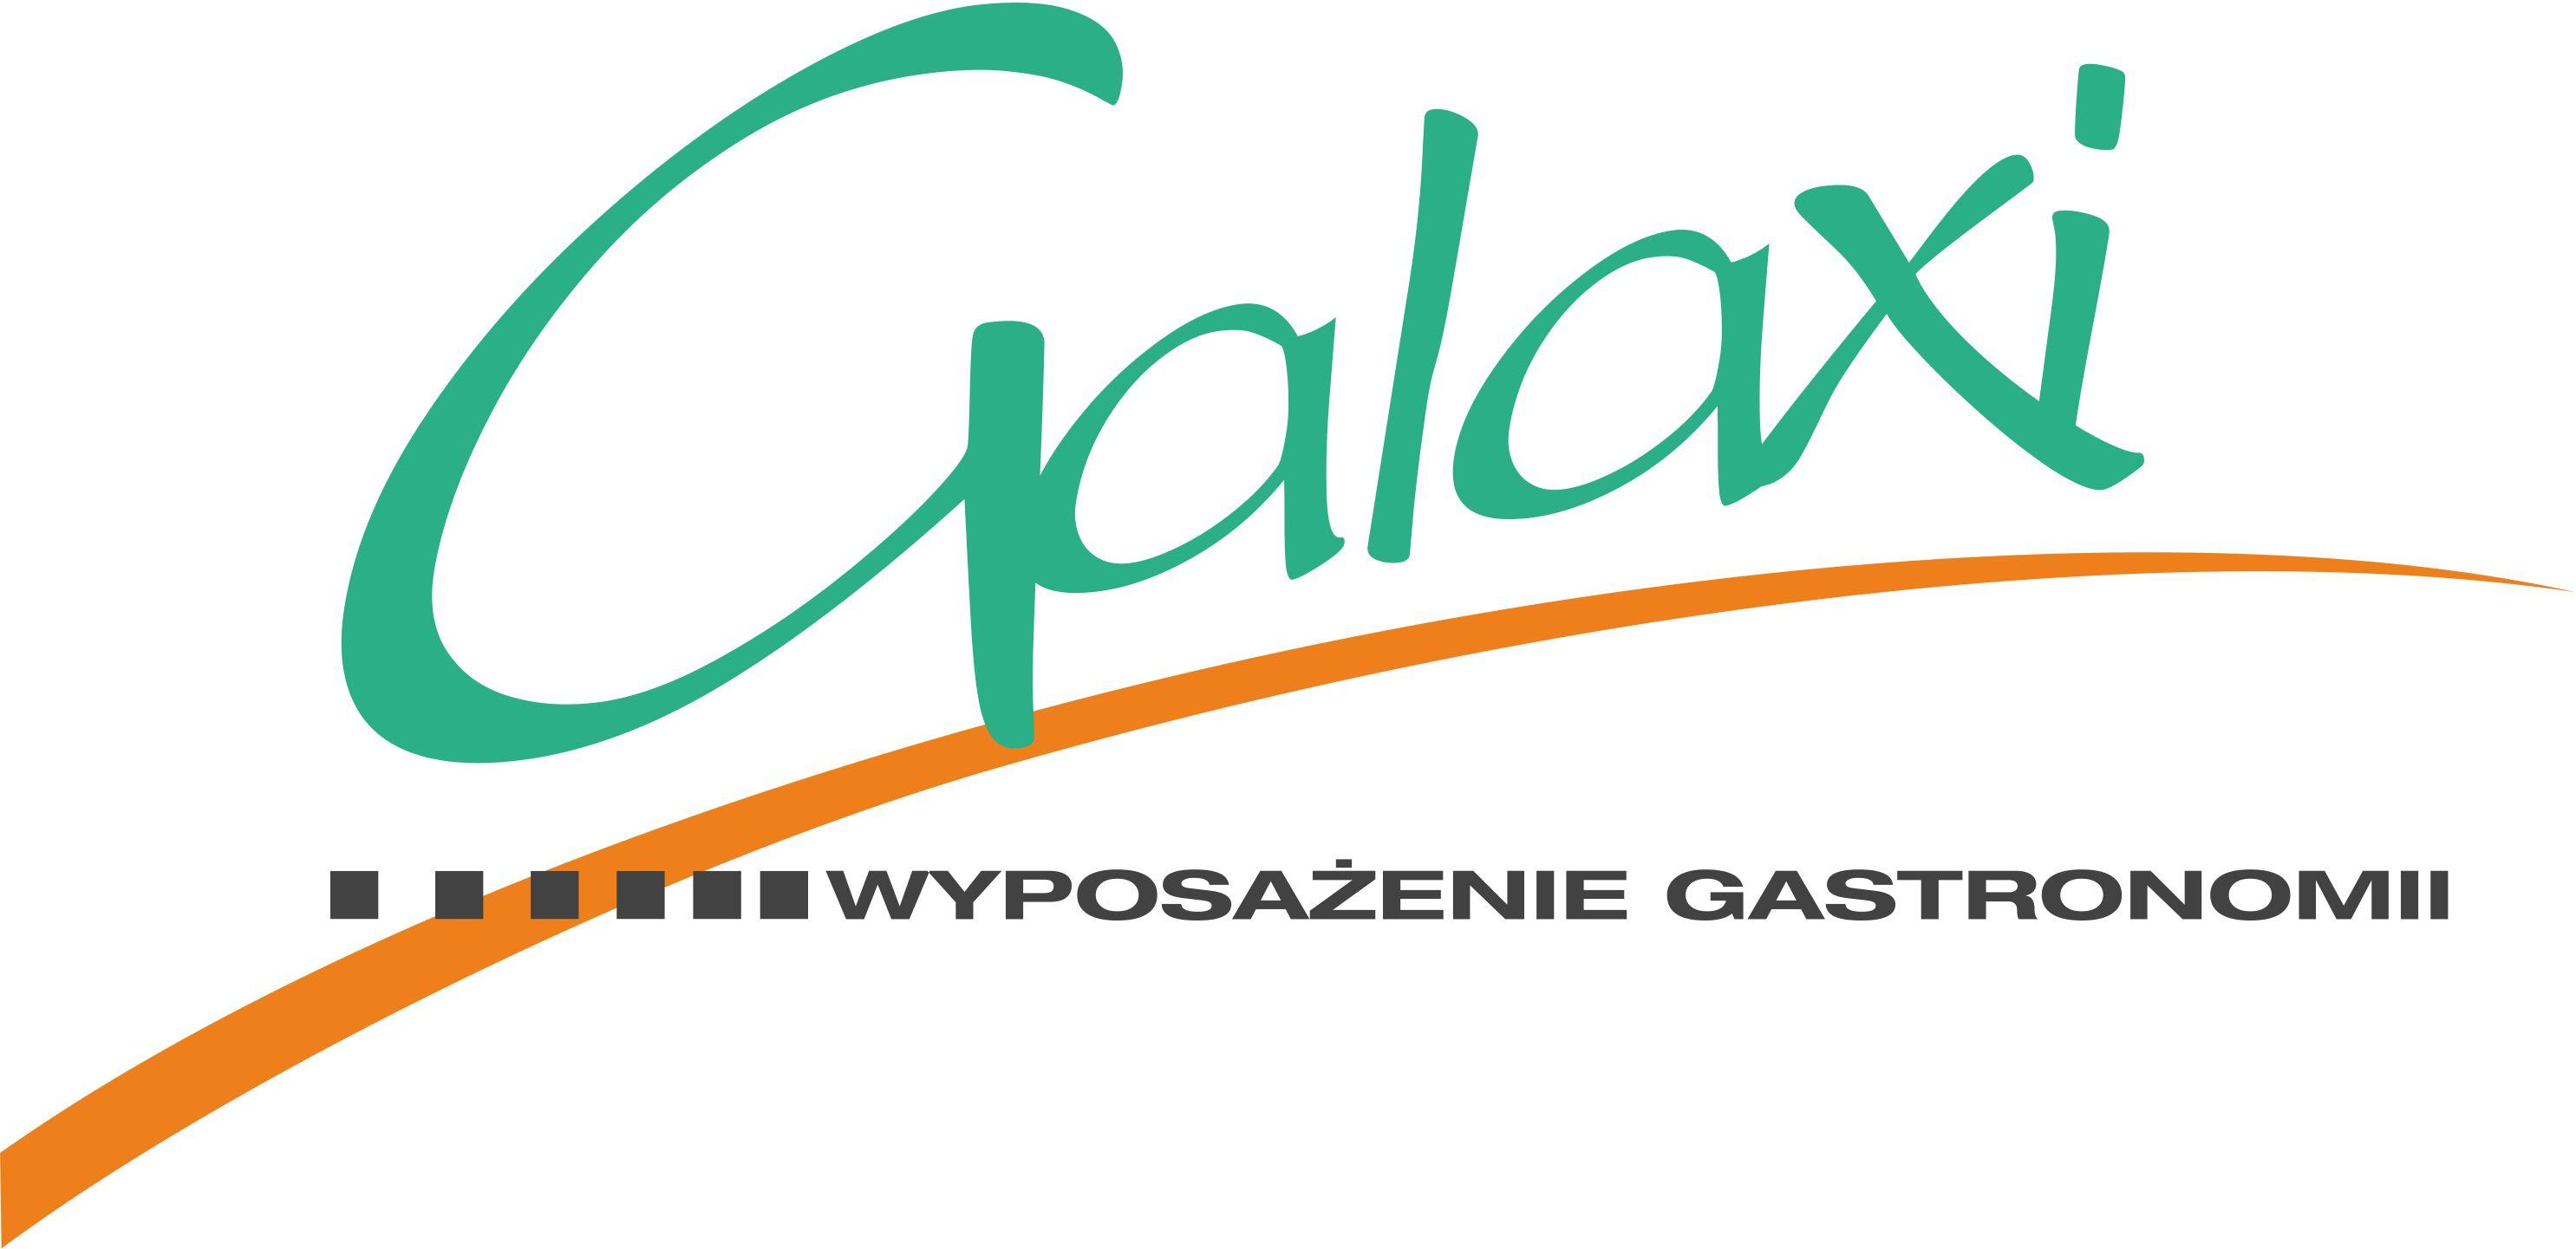 Firma Handlowo-Usługowa "Galaxi" Sp.j. Małgorzata Zając, Rafał Zając